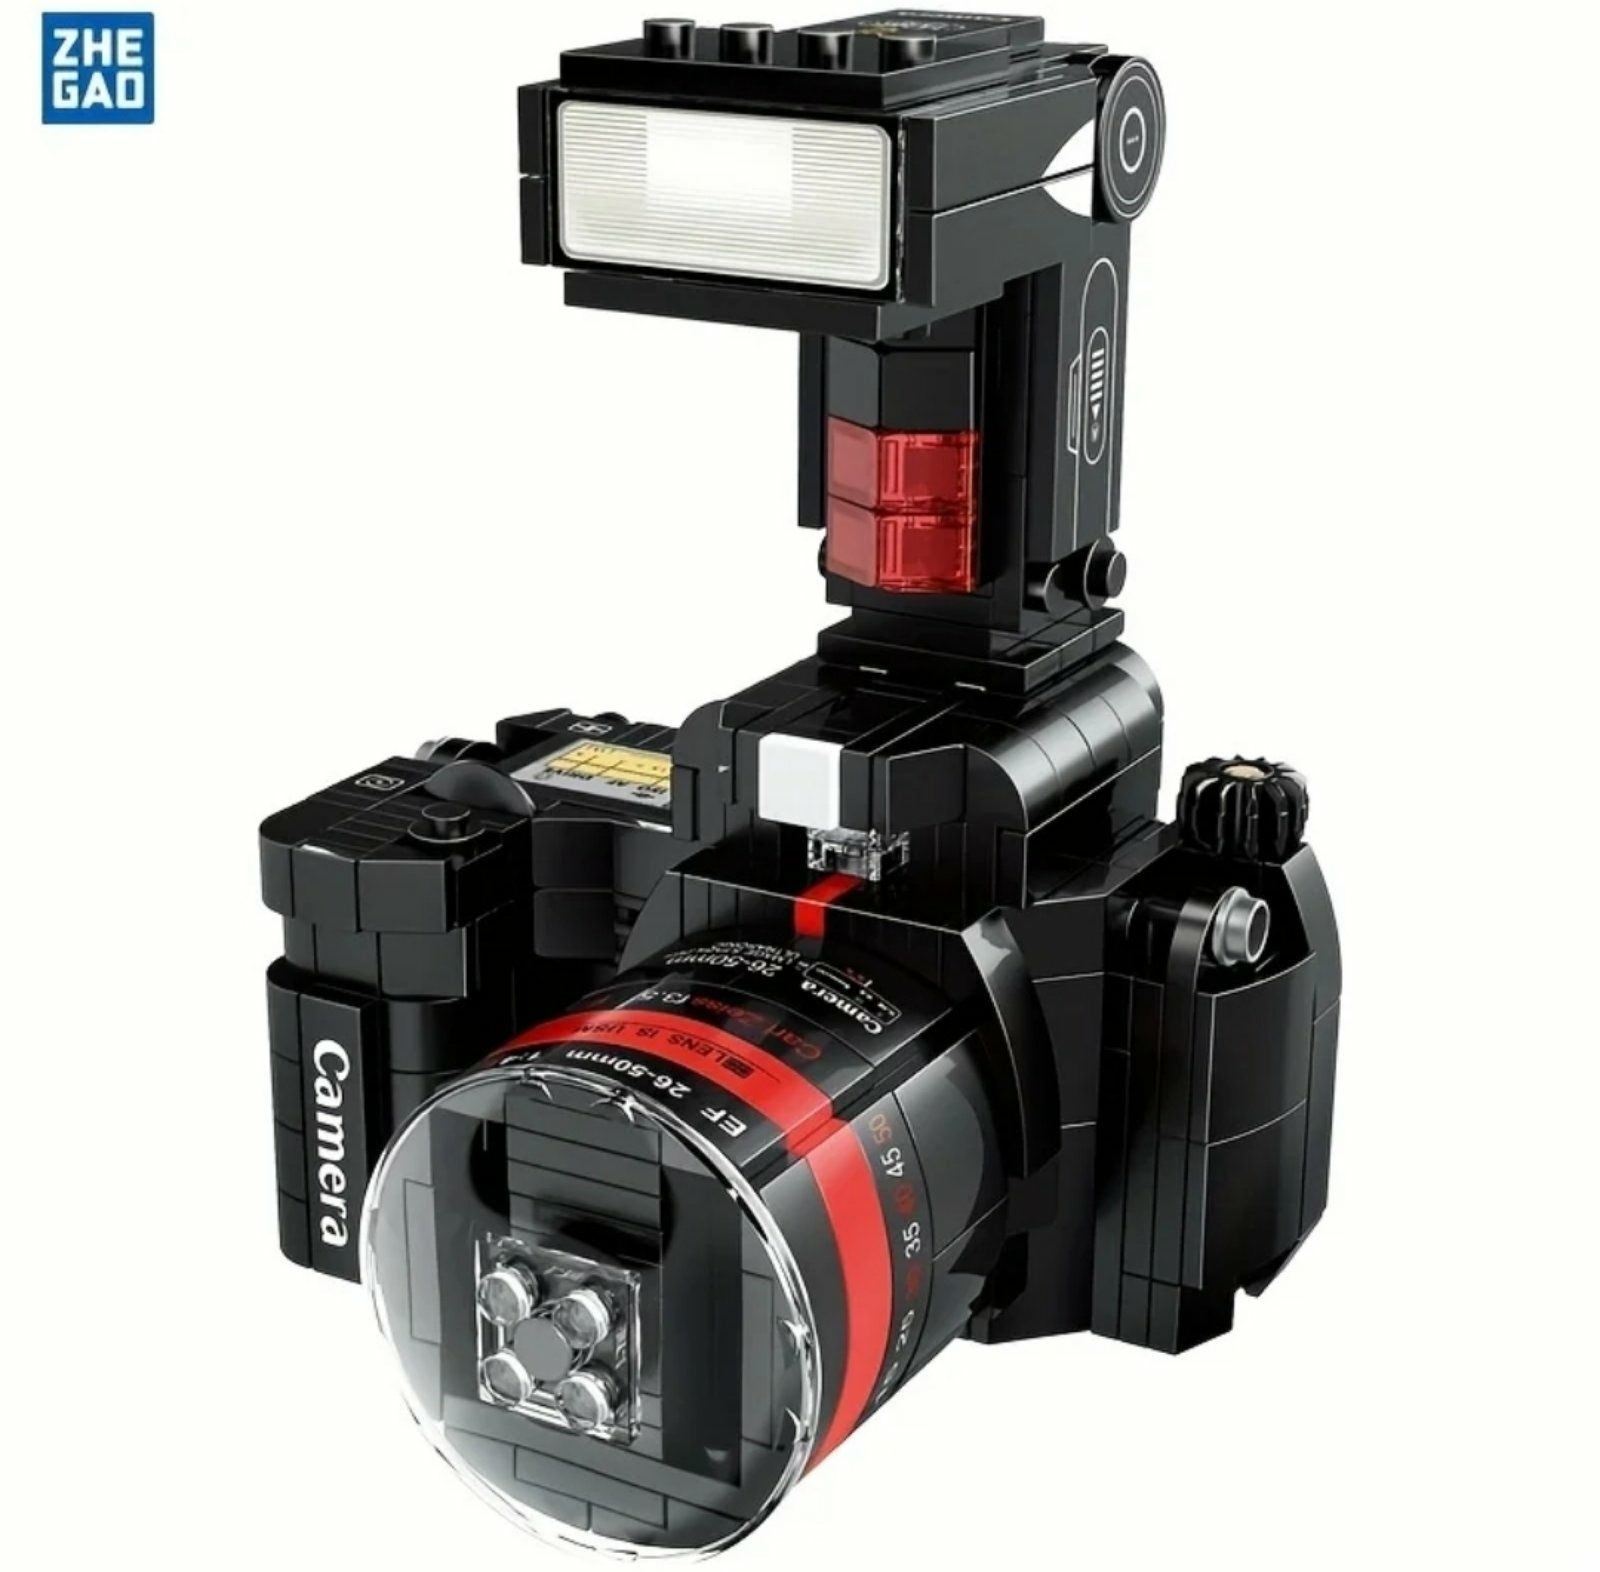 Конструктор фотоаппарат камера ретро Лего 407 шт блоков